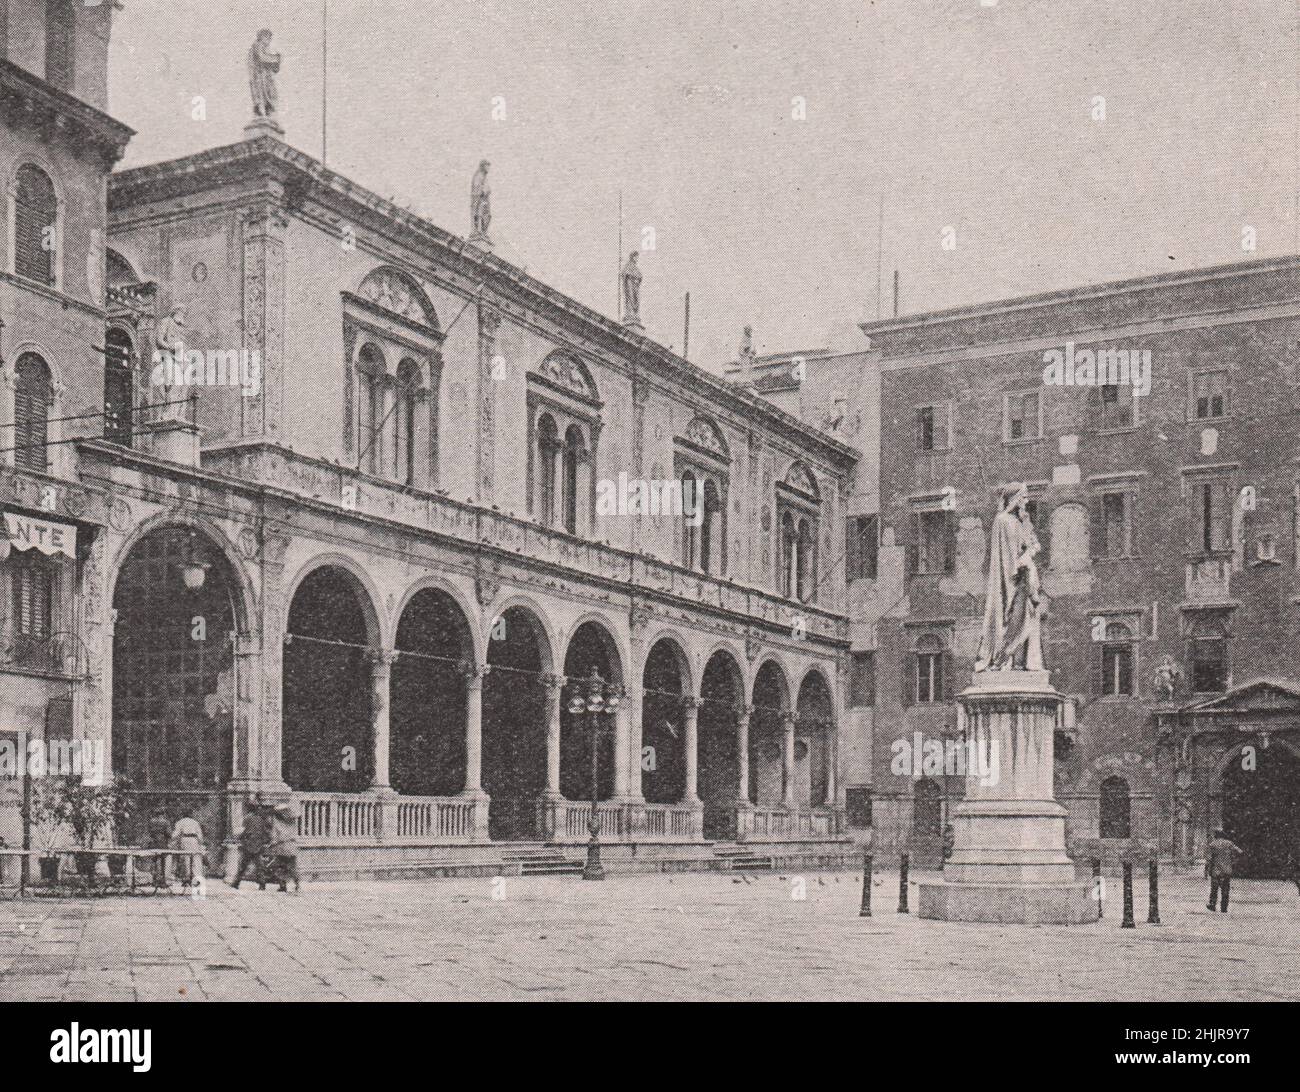 Great Dante's Statue in the Piazza dei Signori at Verona. Italy (1923) Stock Photo